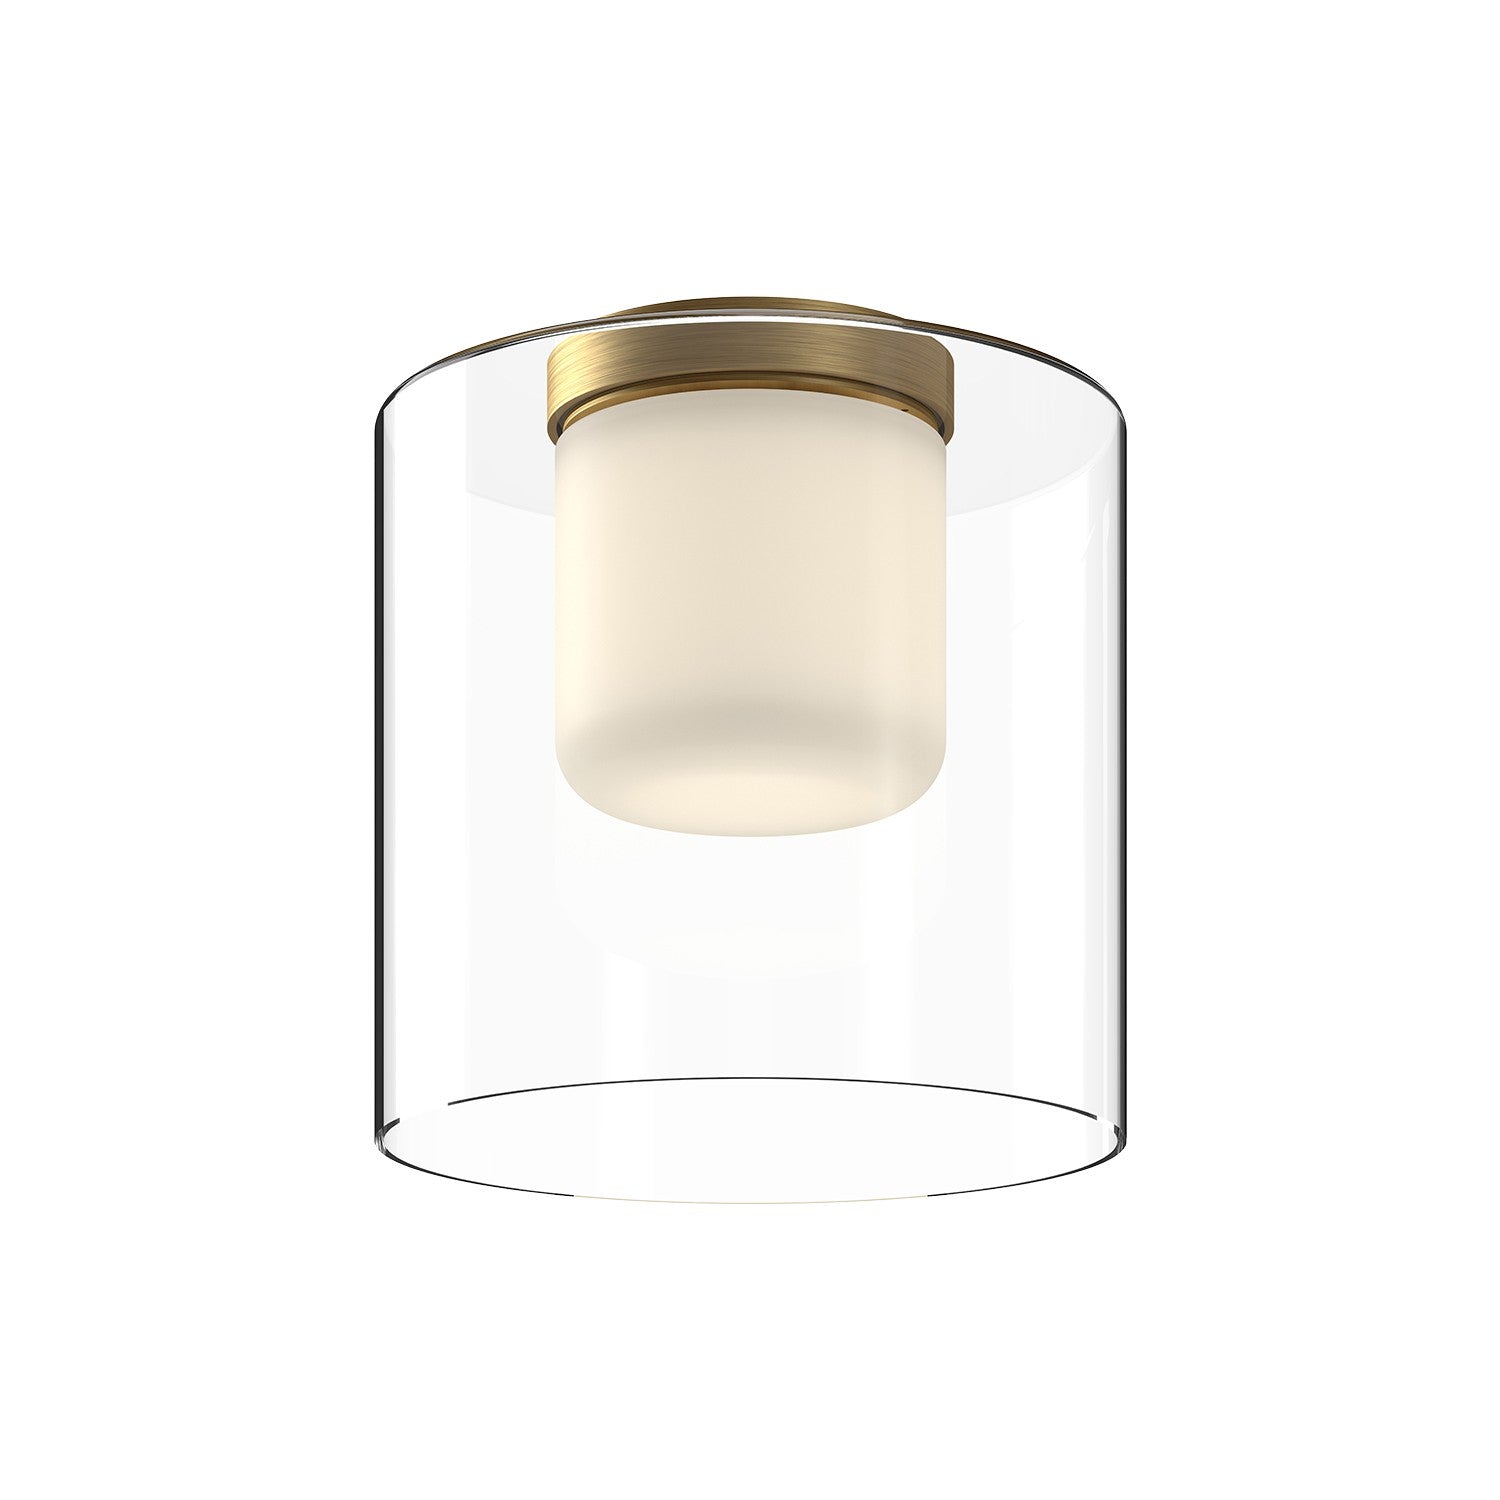 Kuzco Lighting - FM53509-BG/CL - LED Flush Mount - Birch - Brushed Gold/Clear